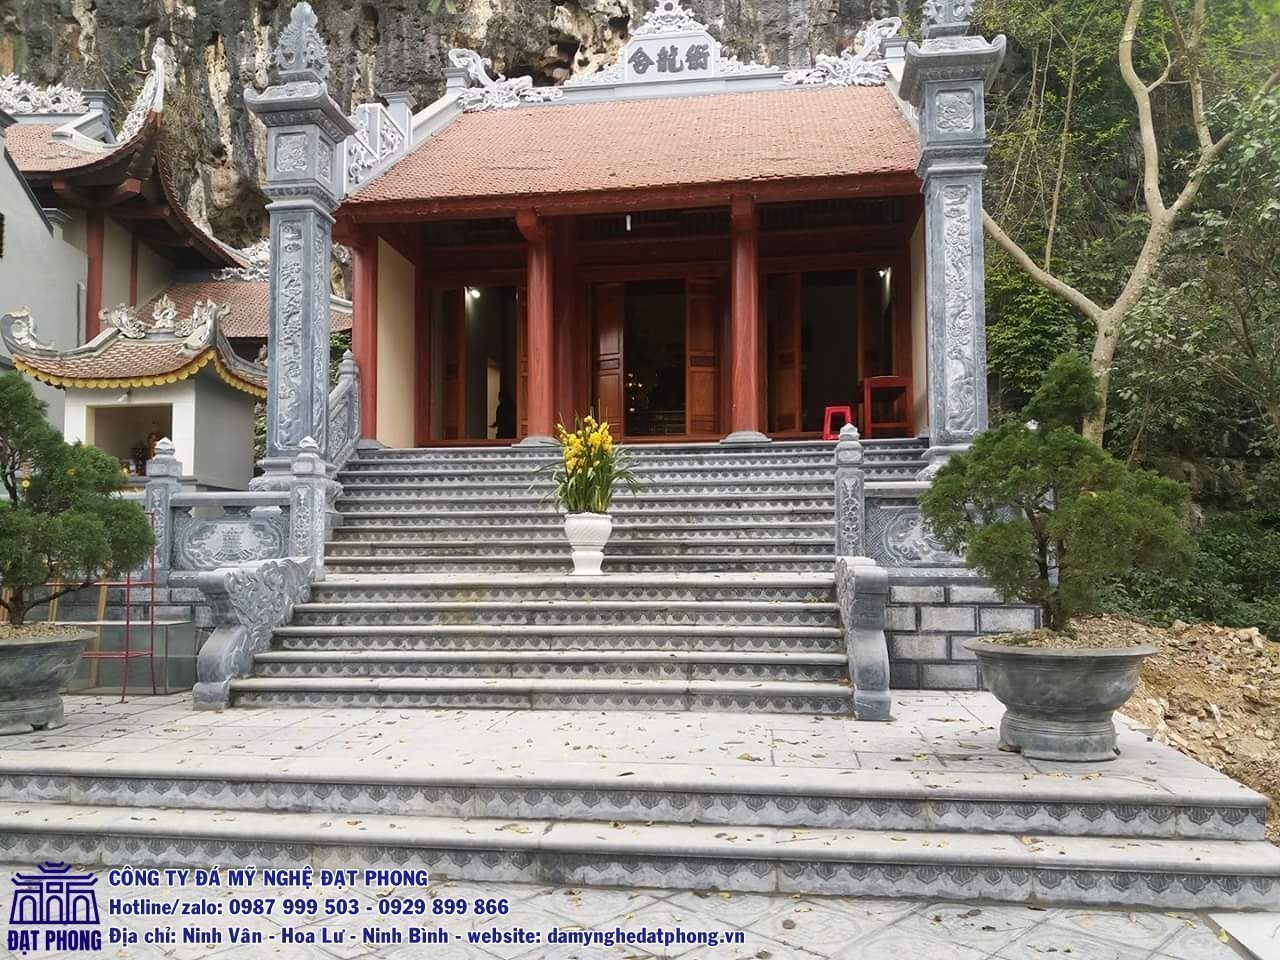 Xây dựng bậc tam cấp tại khu vực đình chùa